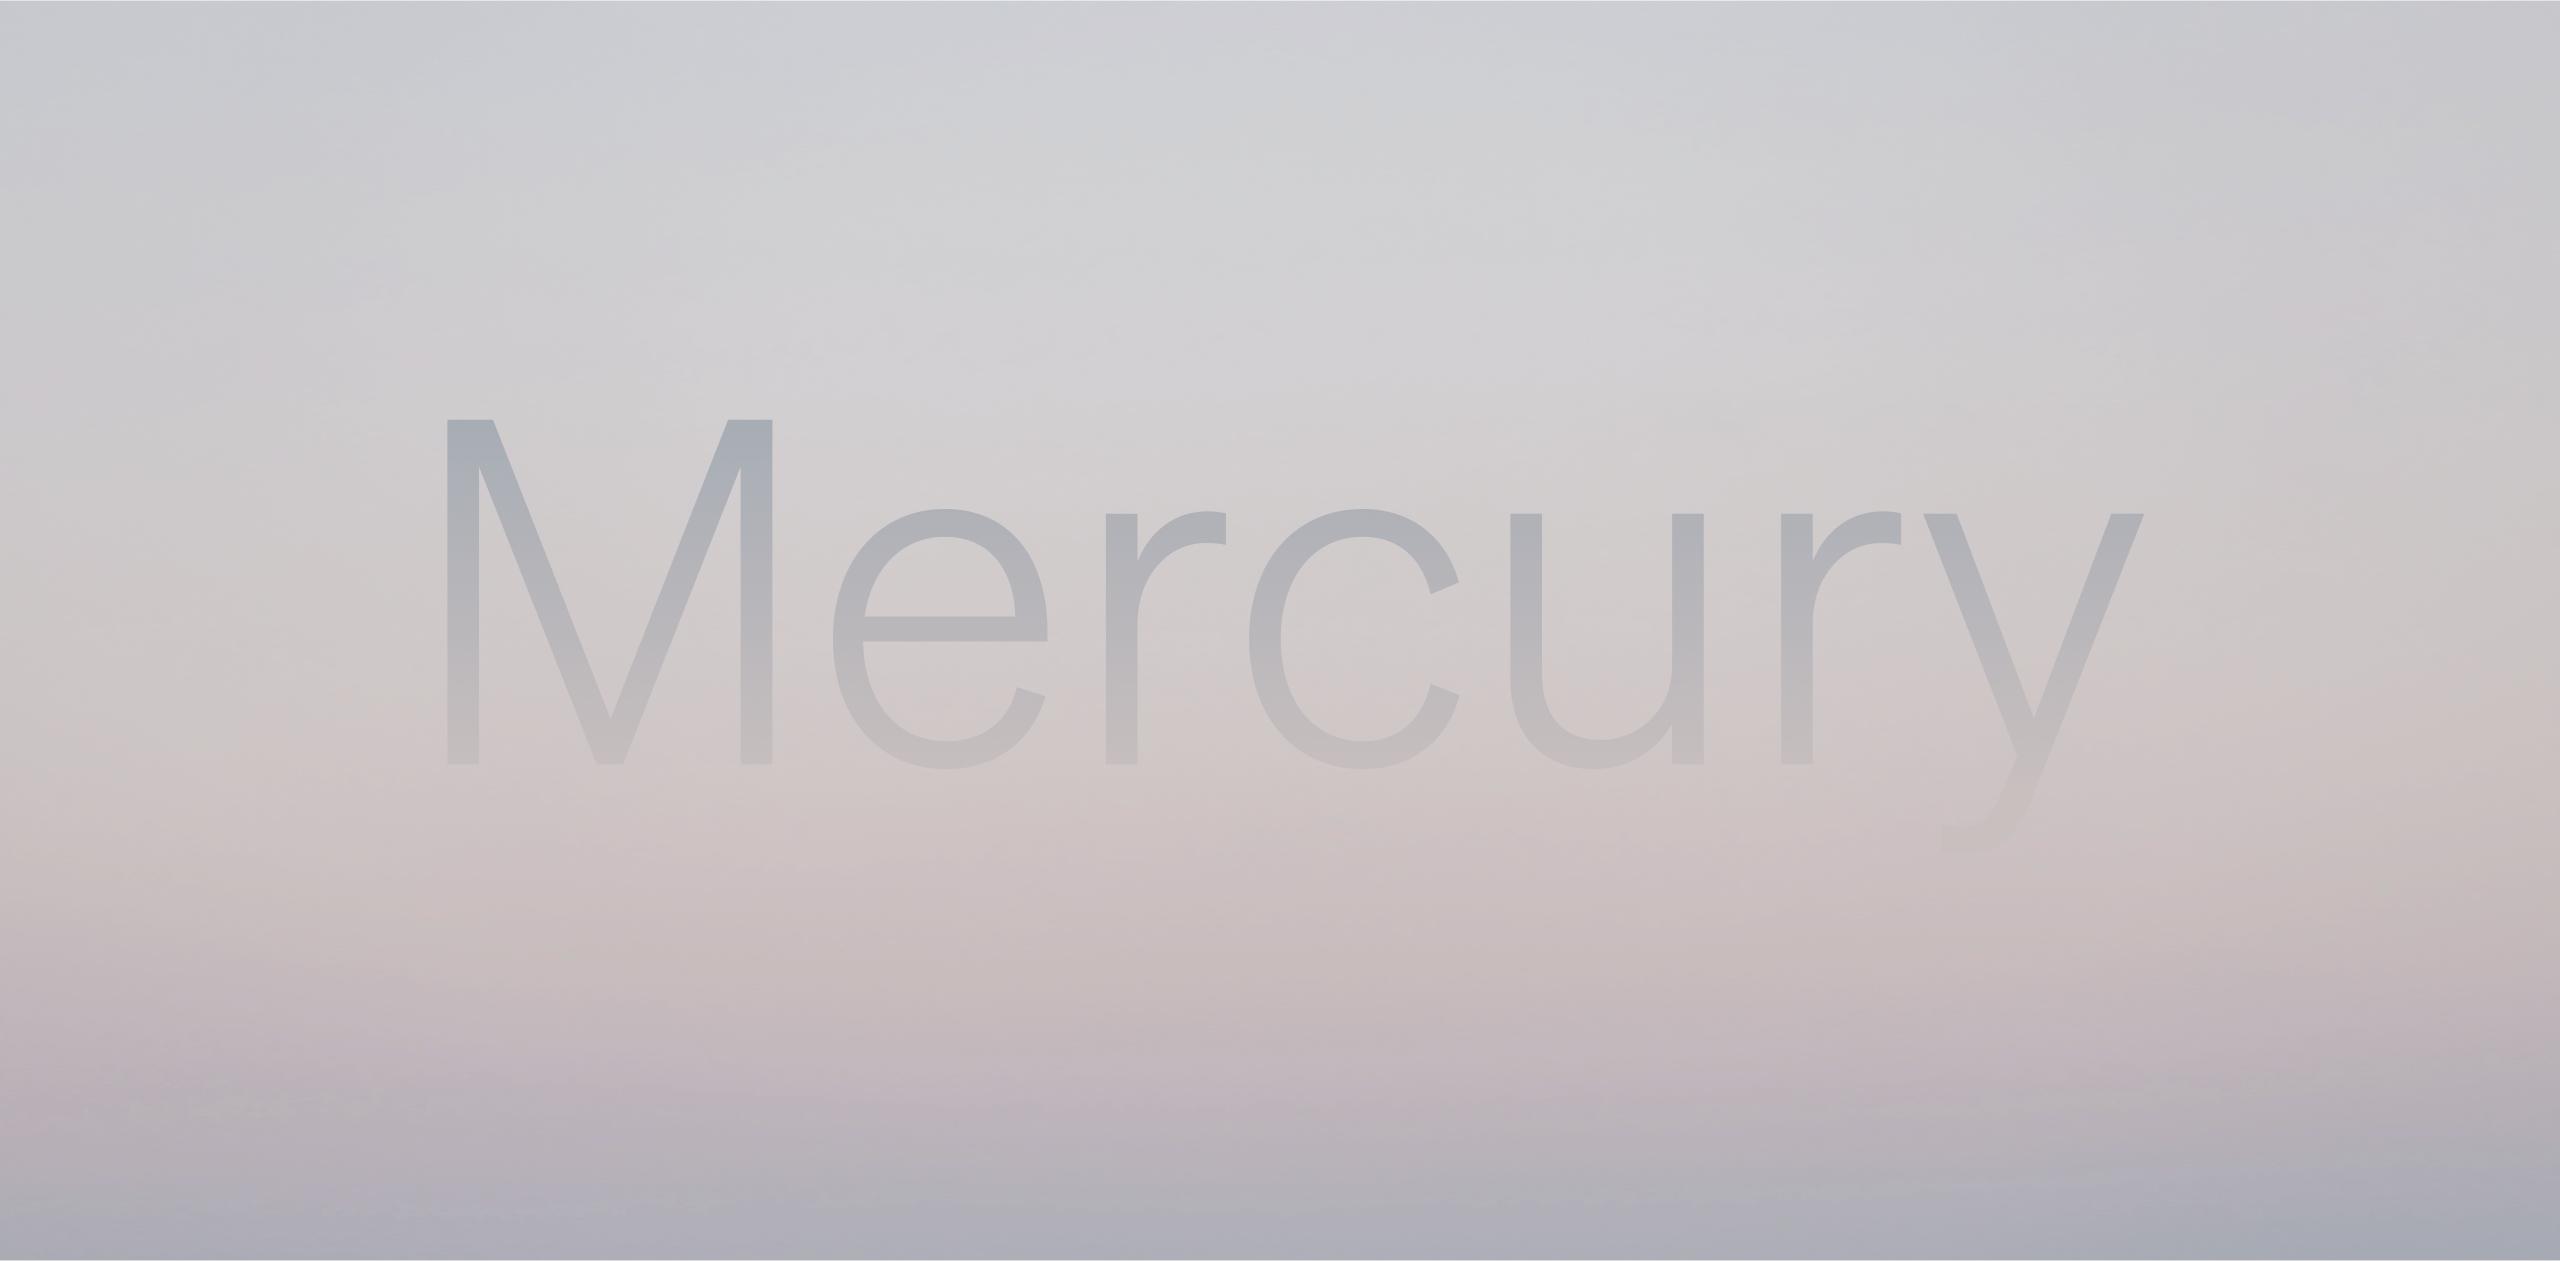 www.mercuryos.com image